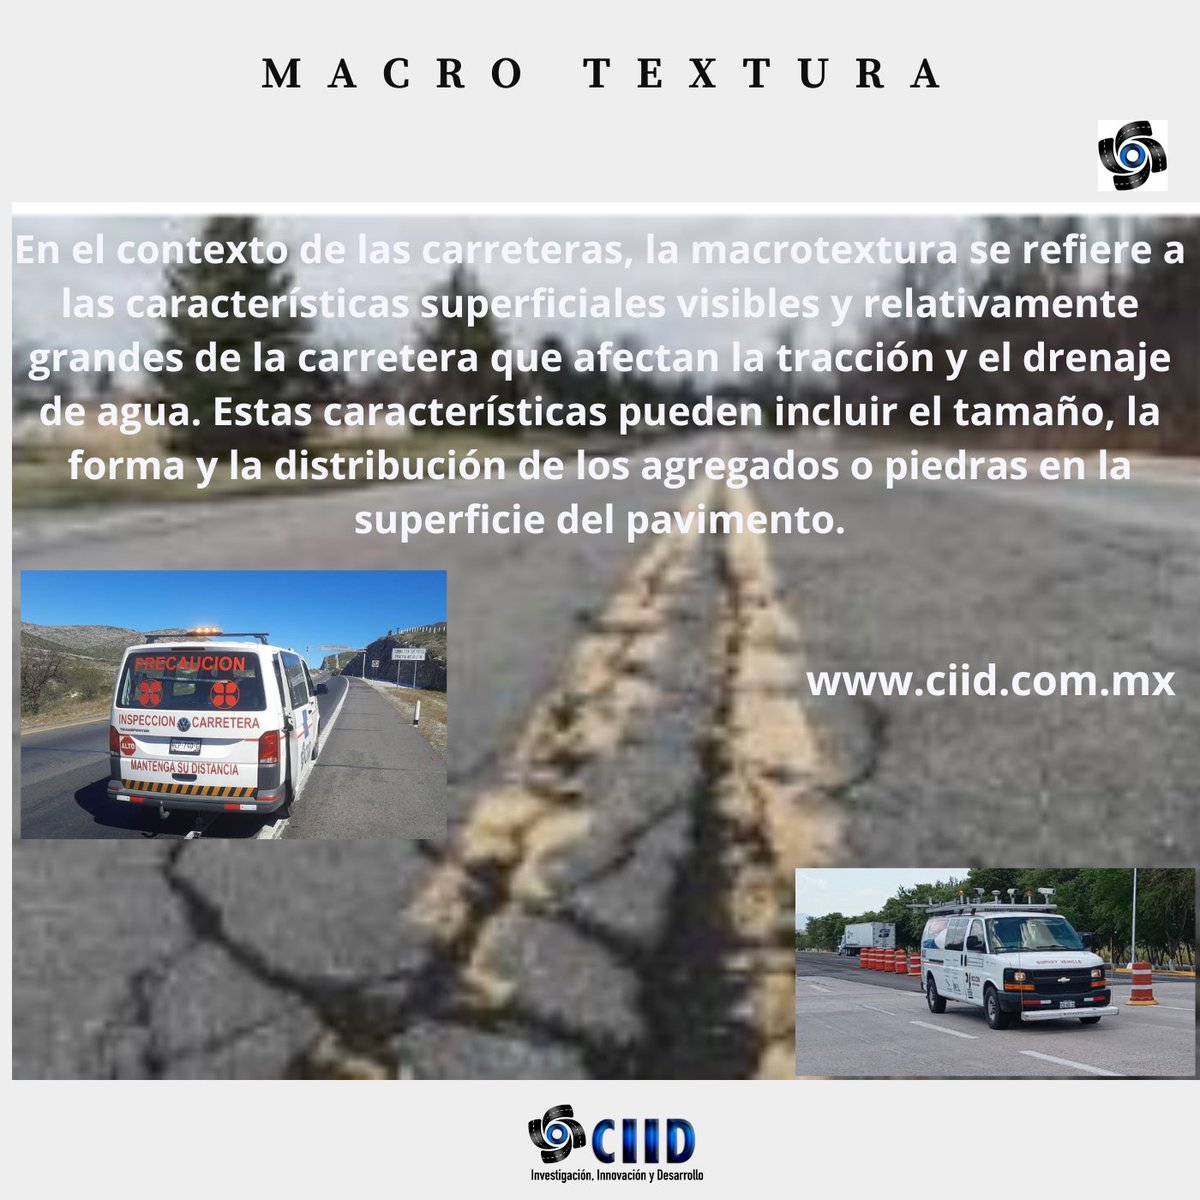 Macrotextura En el contexto de las carreteras, la macrotextura se refiere a las características superficiales visibles y relativamente grandes de la carretera.